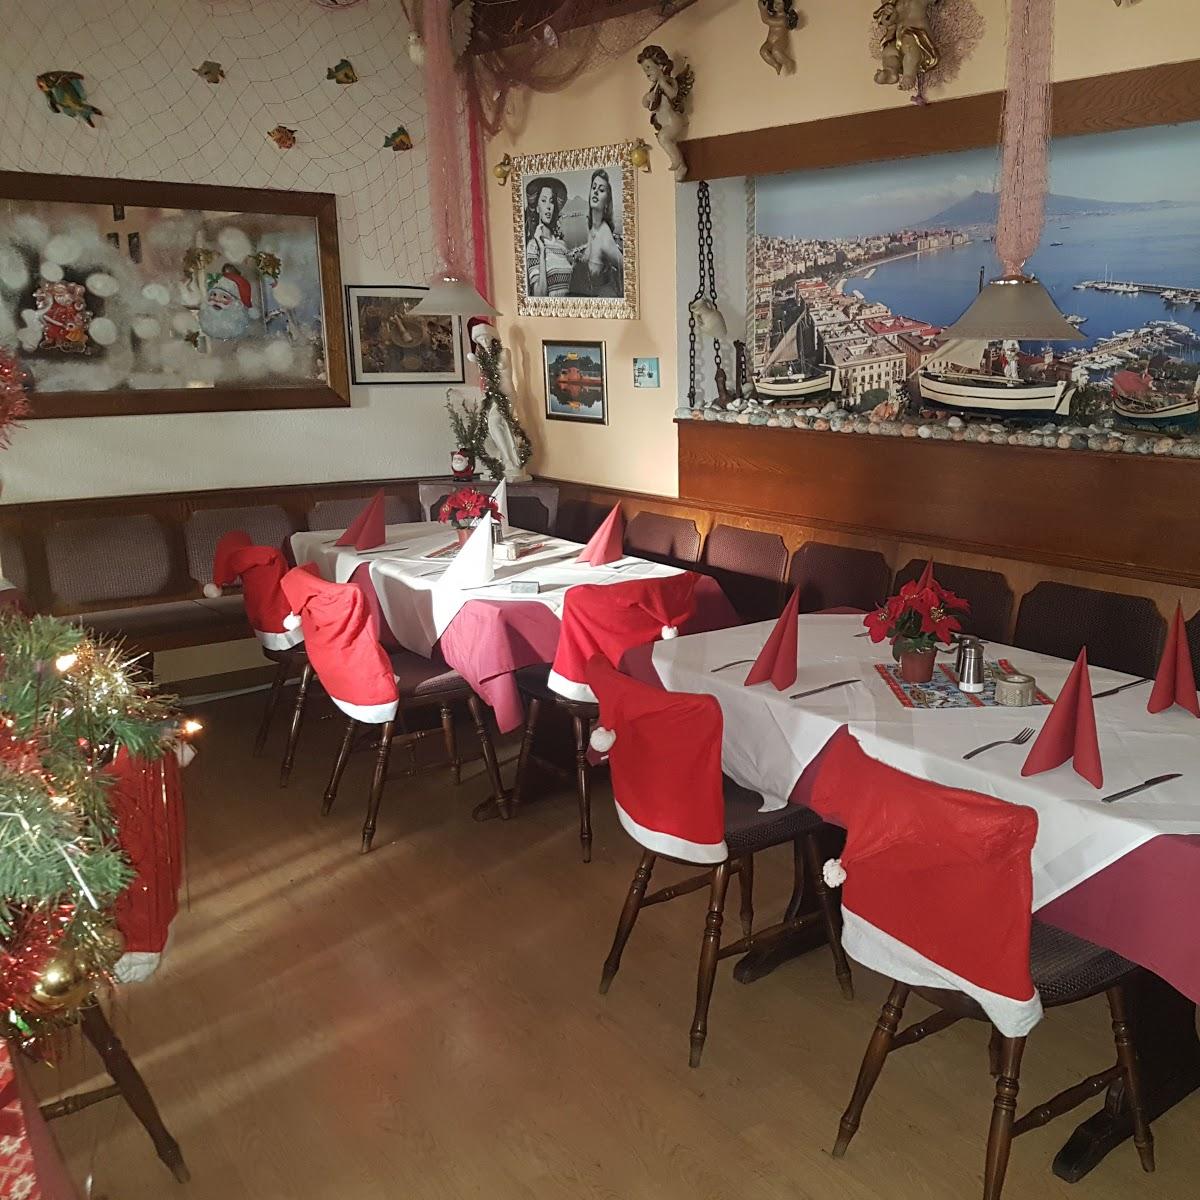 Restaurant "Napoli Mia" in  Eibelstadt